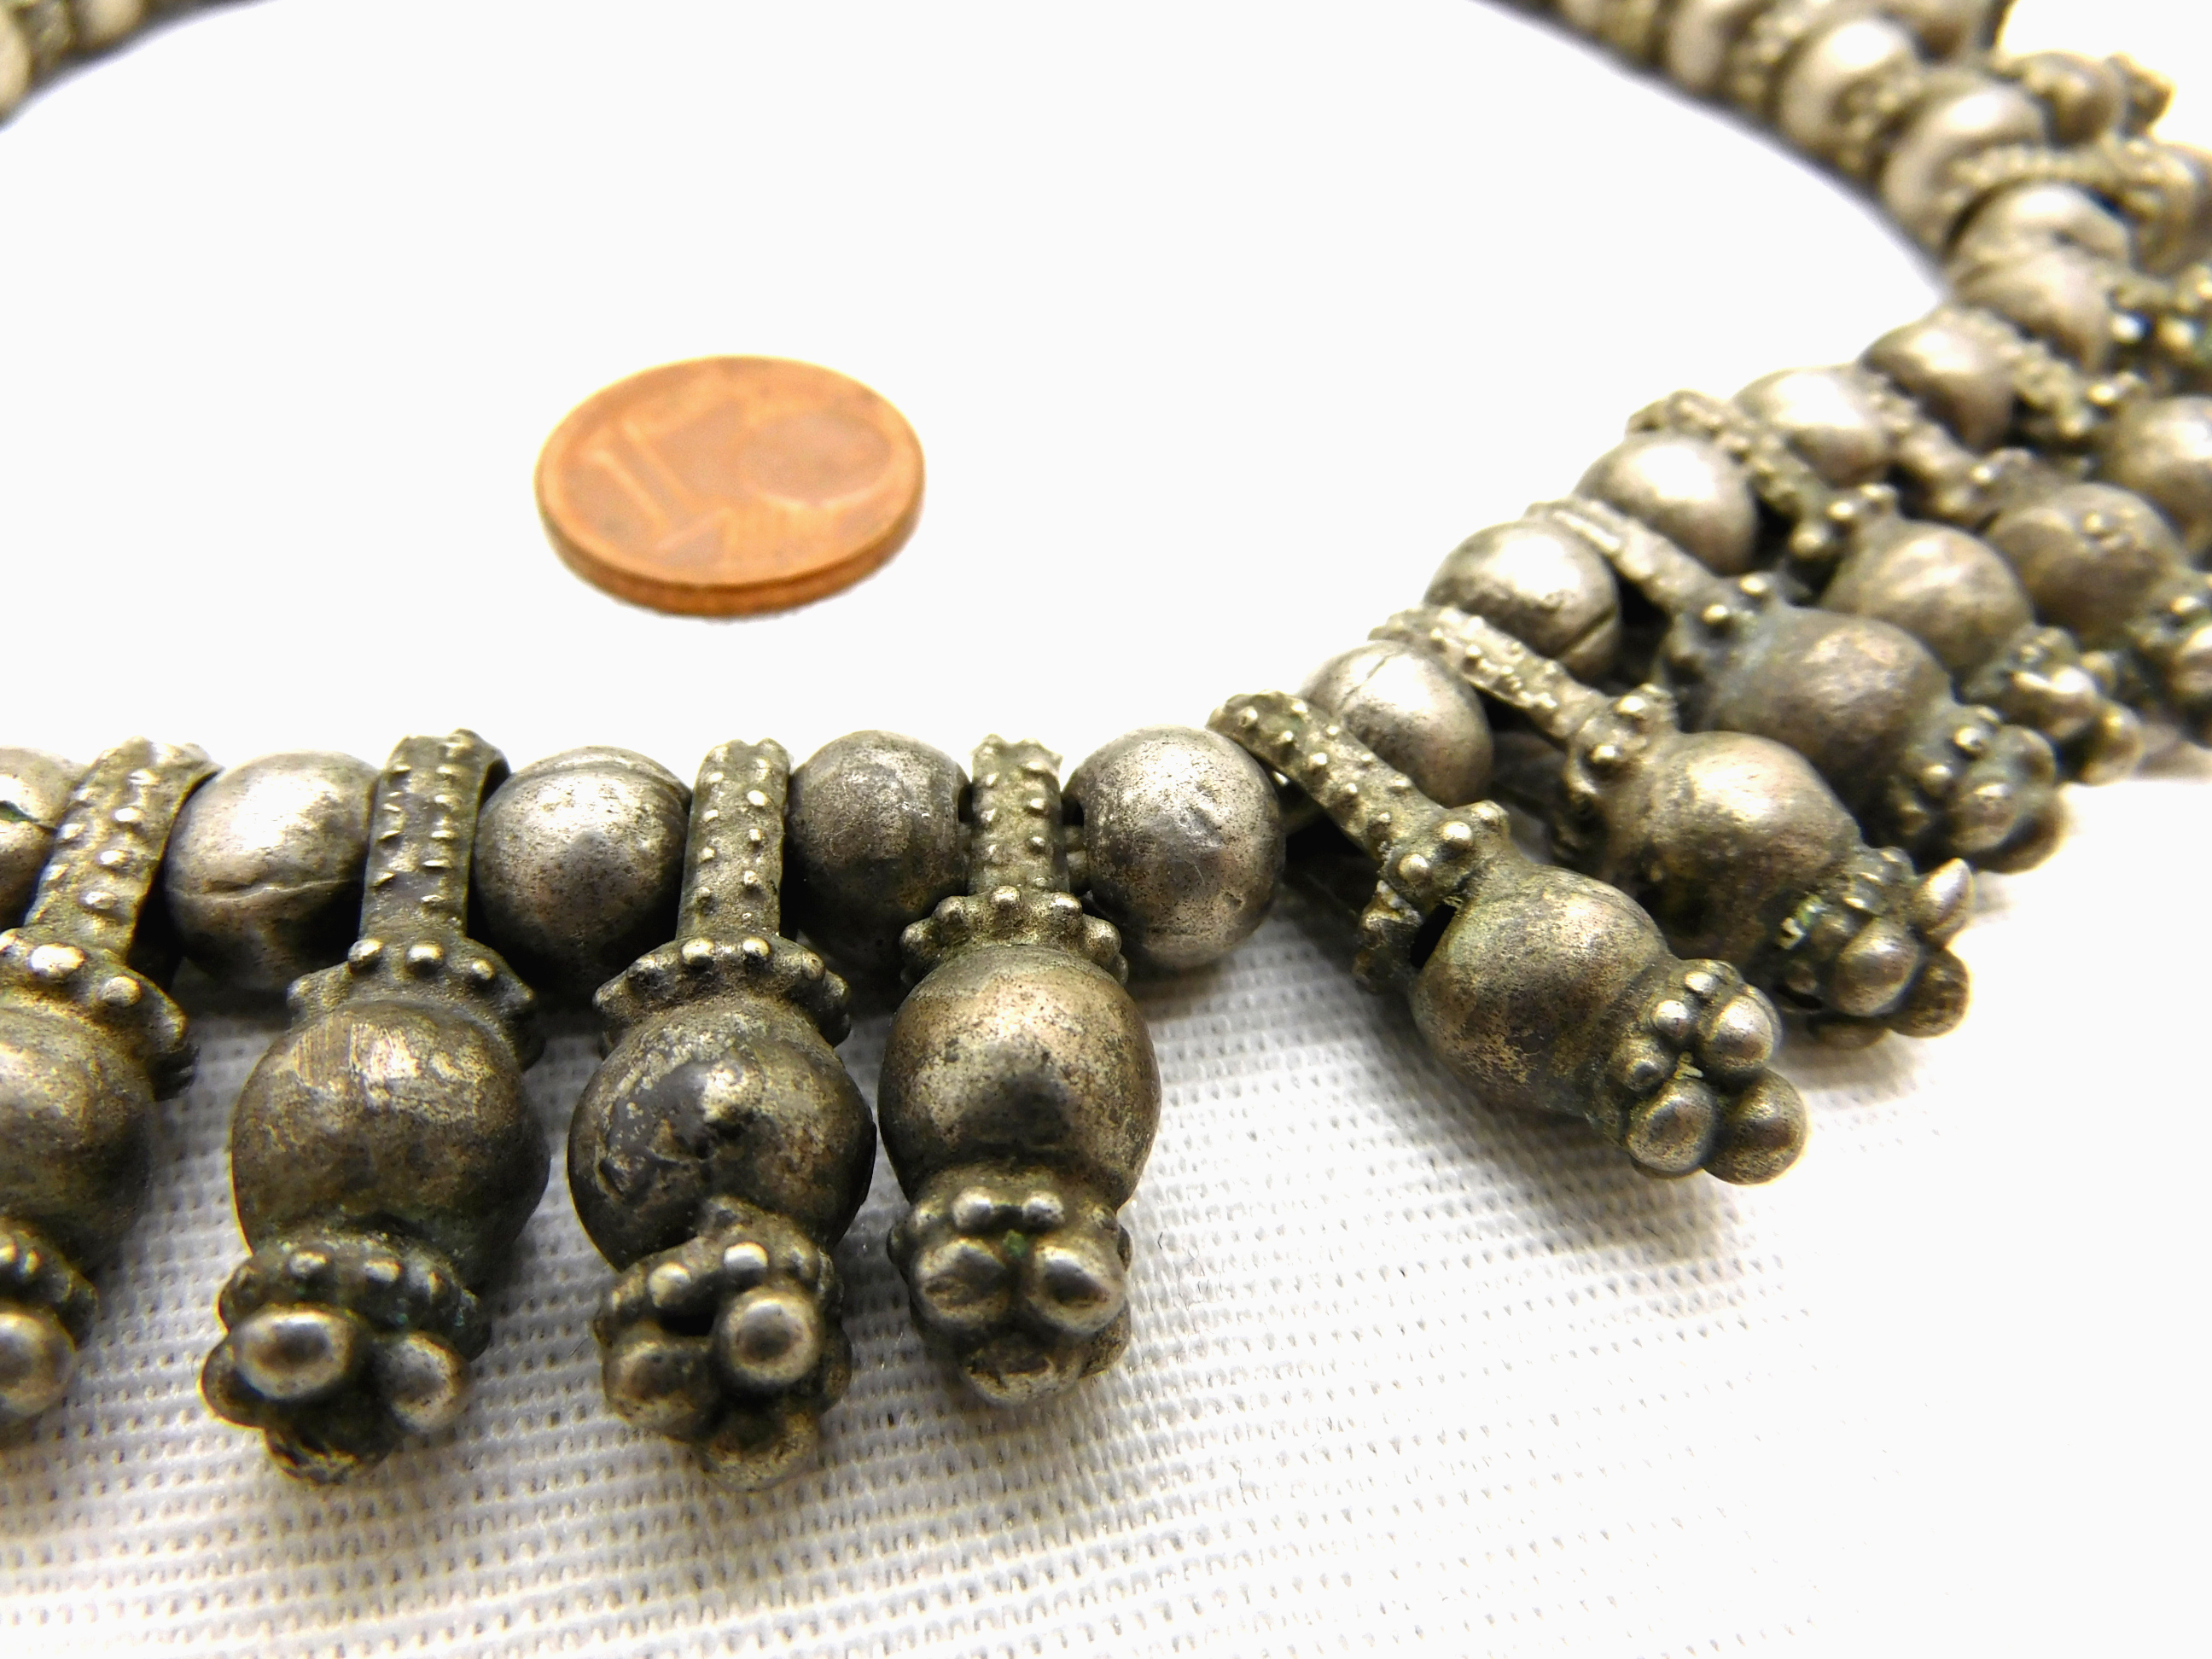 Yemeni silver bead beads and pendants set